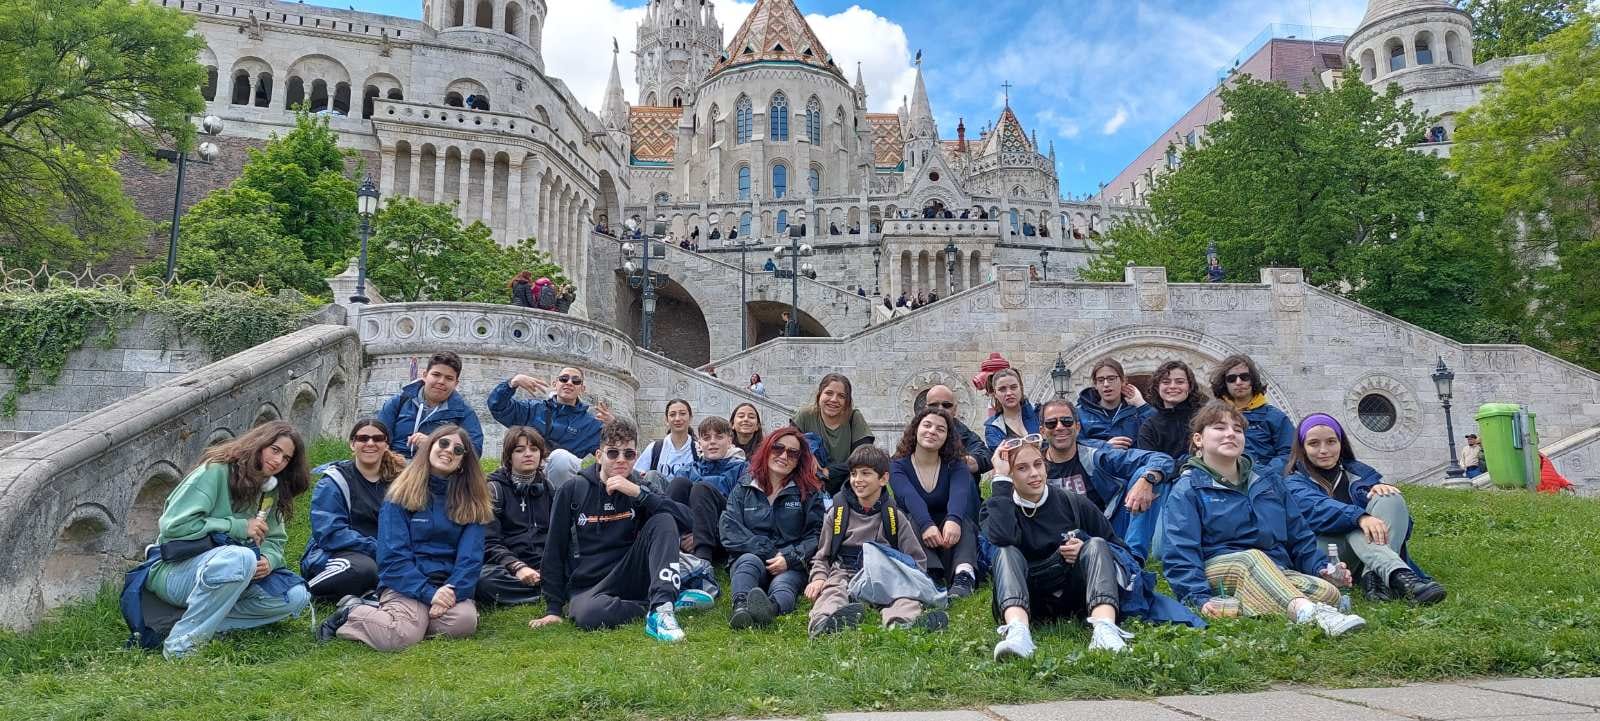 Μουσικό Σχολείο Μυτιλήνης: Εκπαιδευτική Αποστολή στη Βουδαπέστη στο Πλαίσιο του Προγράμματος Erasmus+